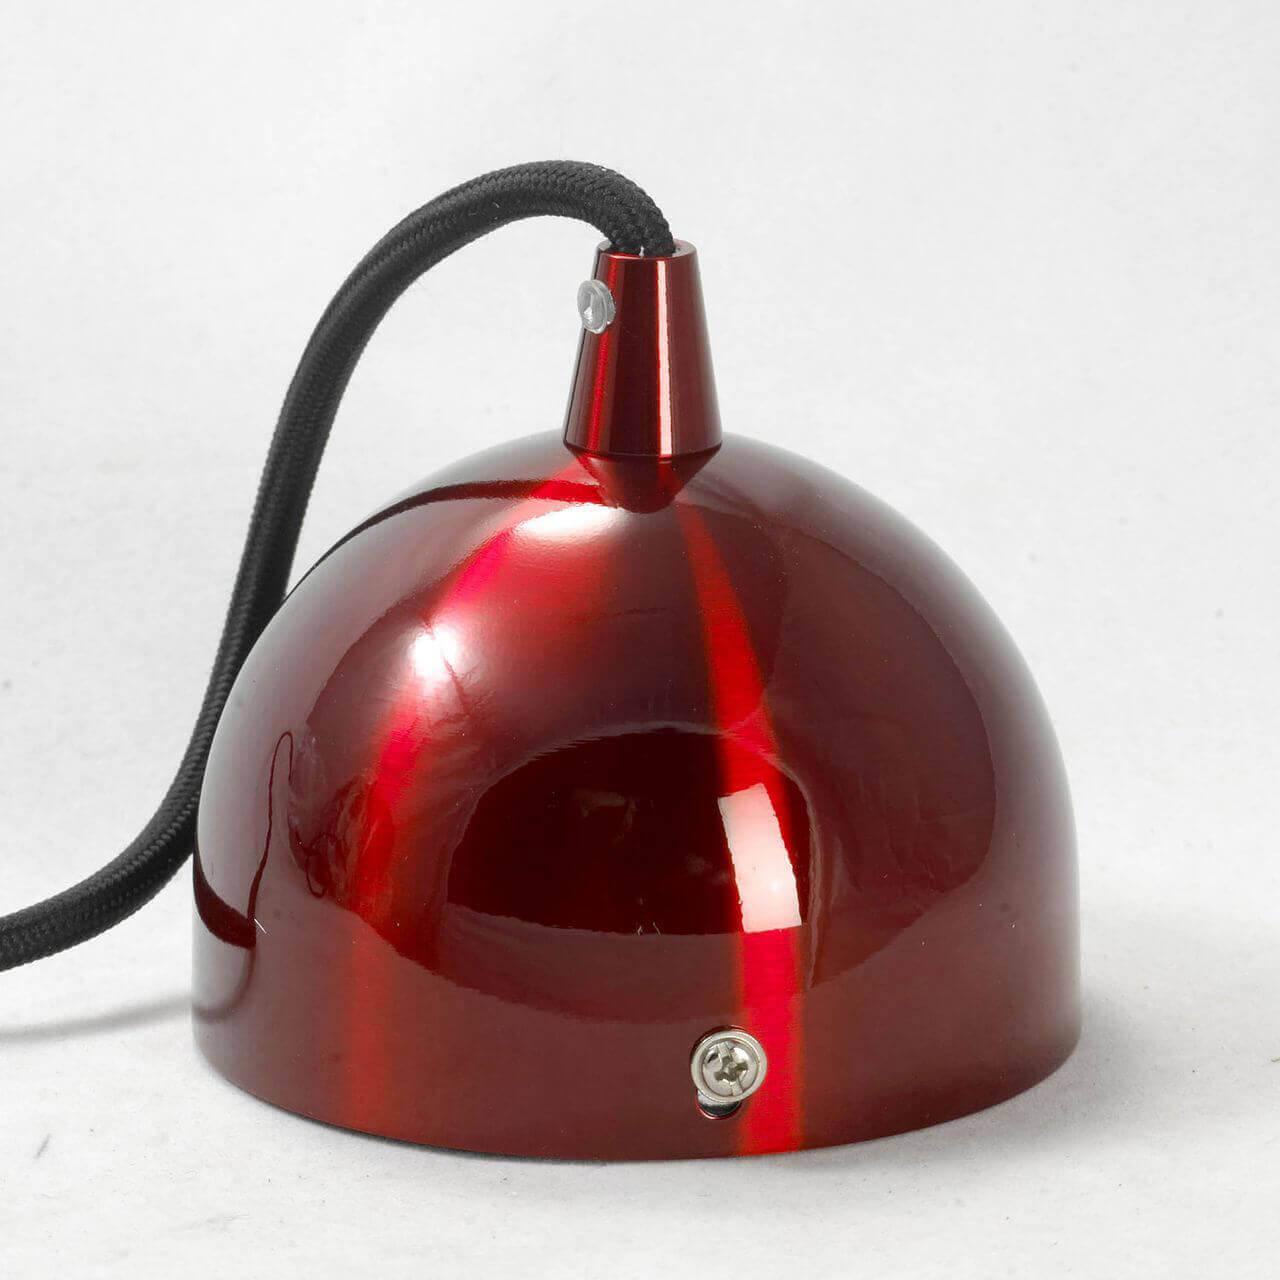 подвесной светильник lussole loft saratoga lsp-9656